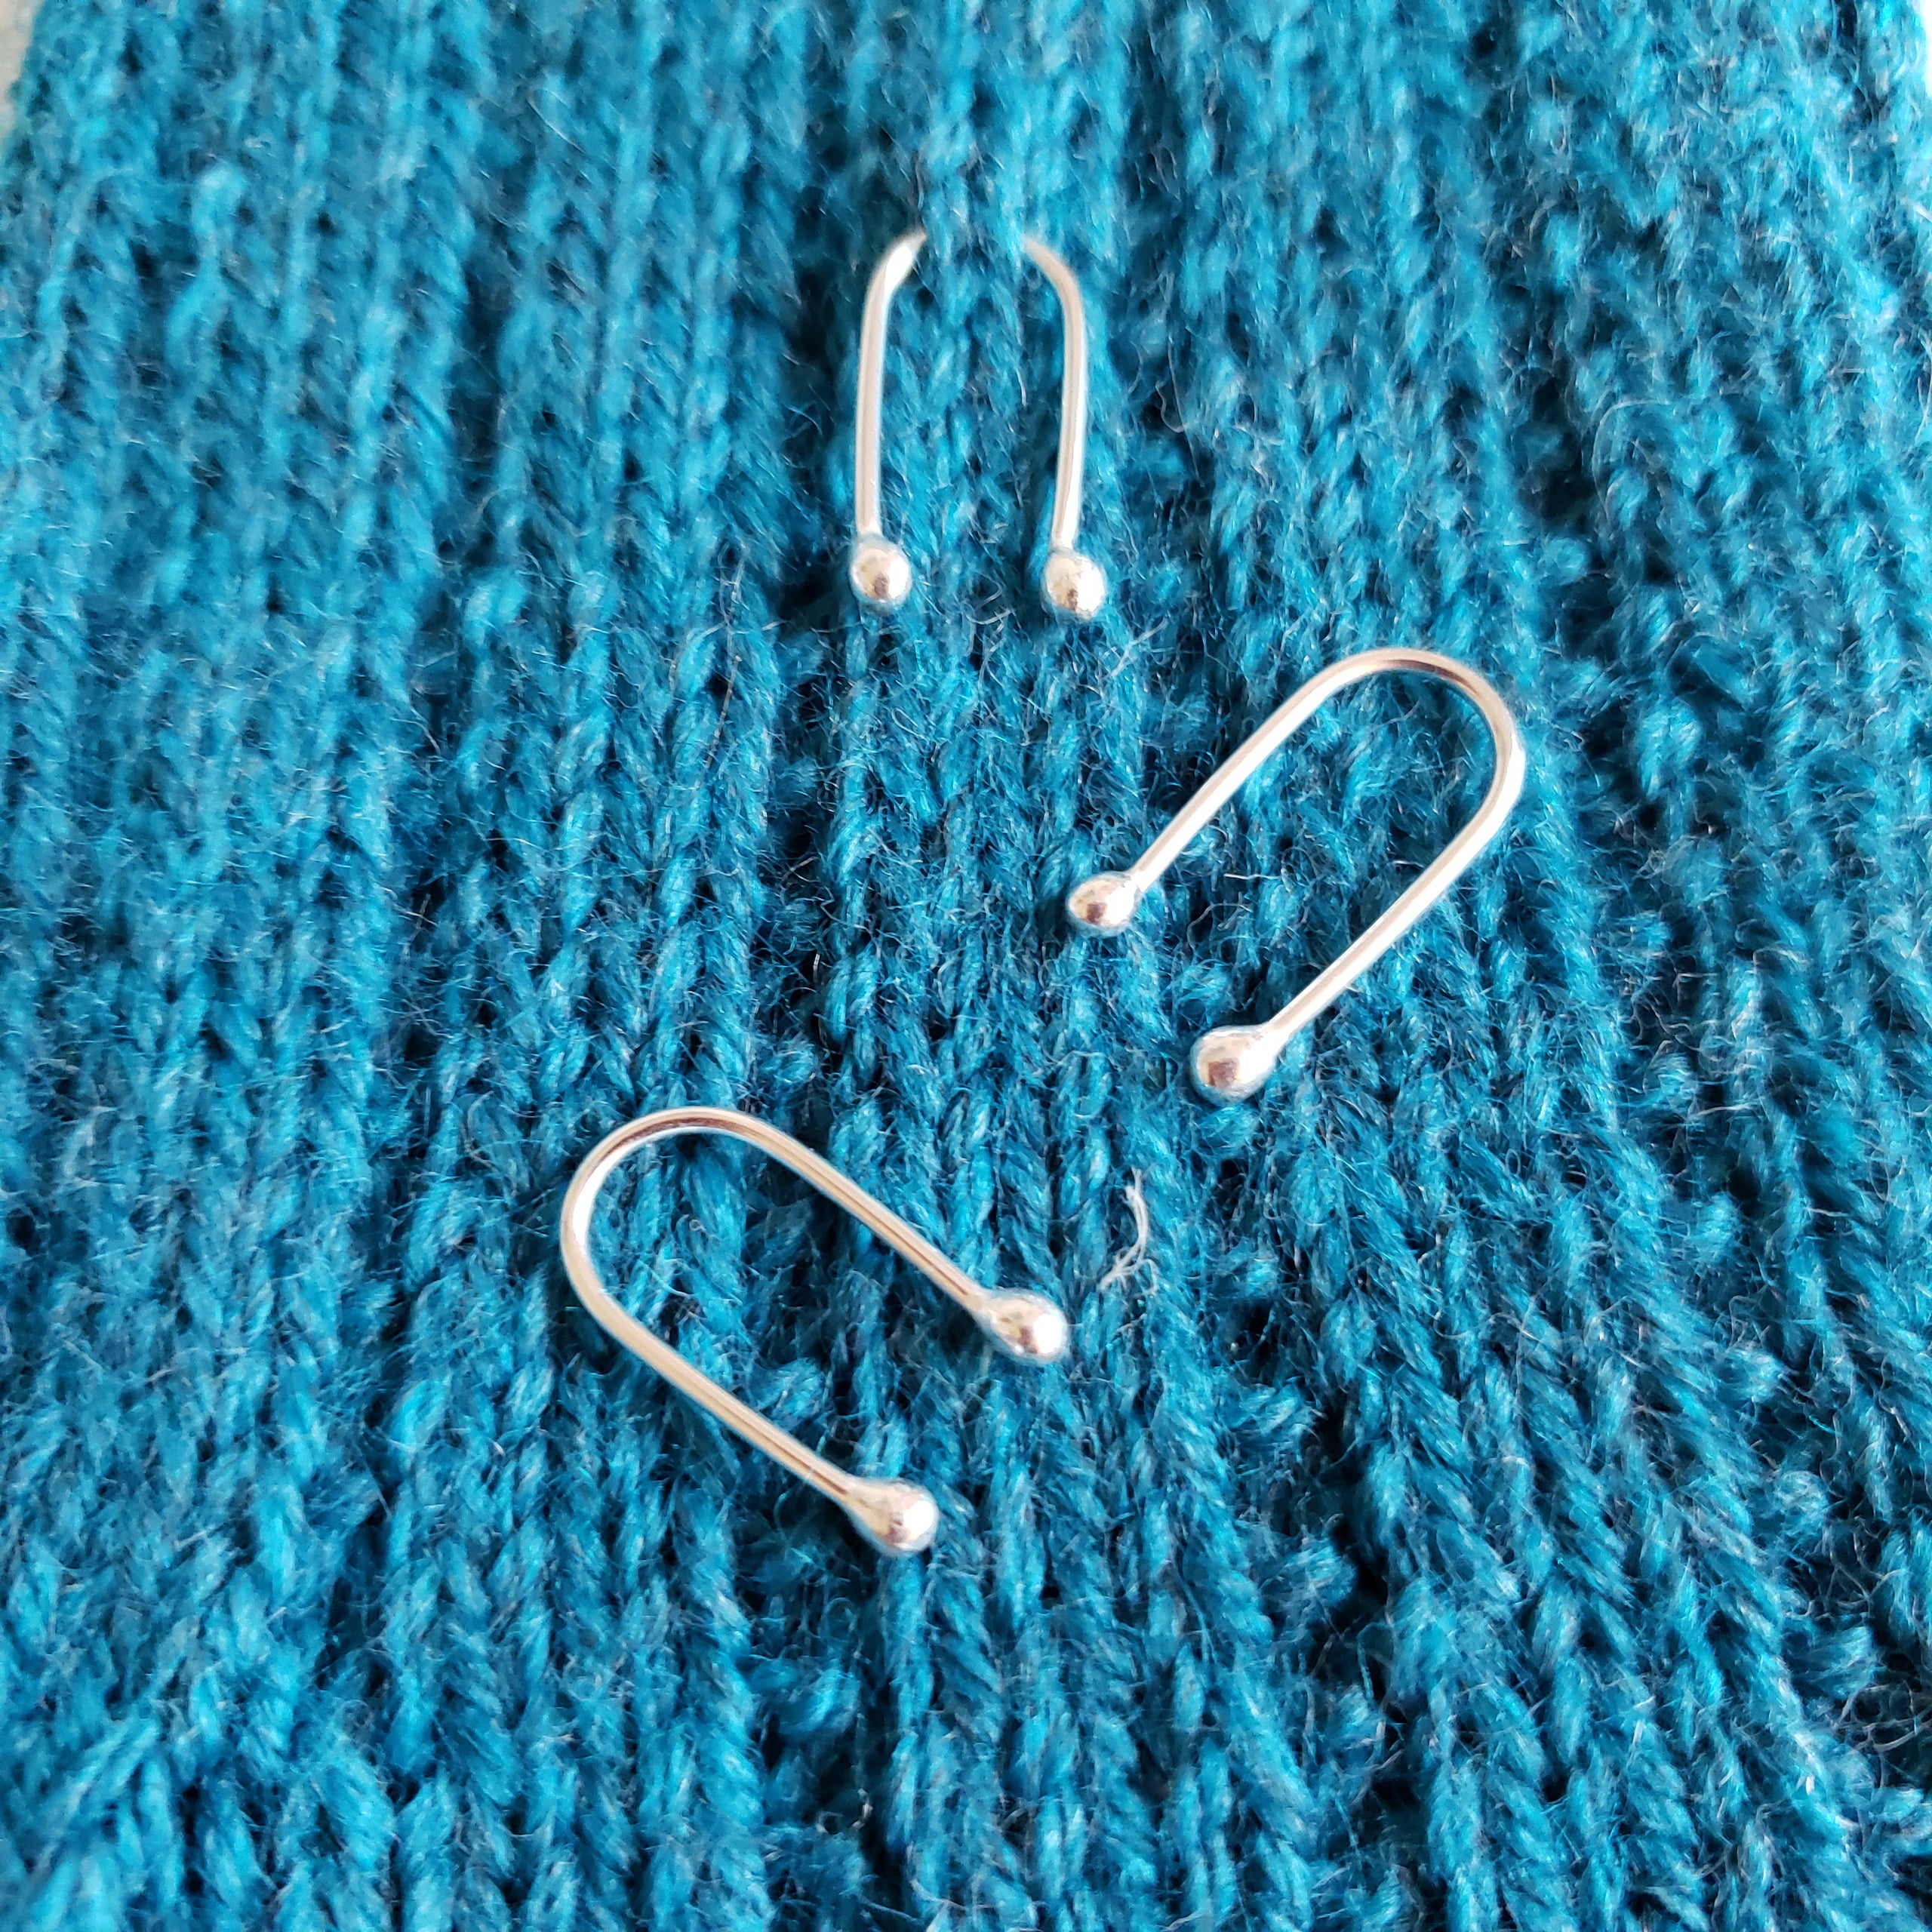 Knitting needles — TJOCKT